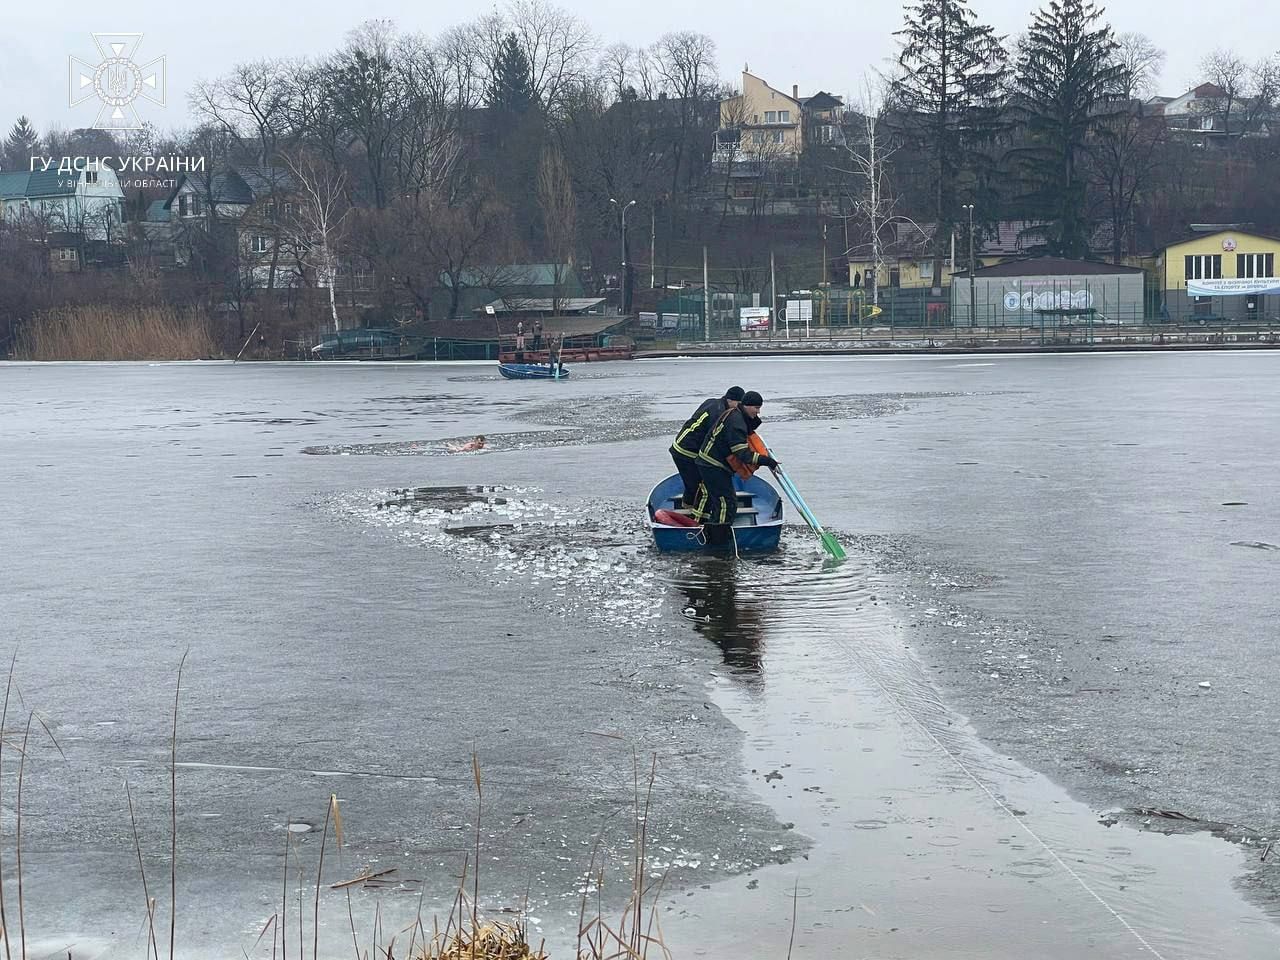 Винничанин нырнул в ледяную реку, чтобы спасти свою собаку